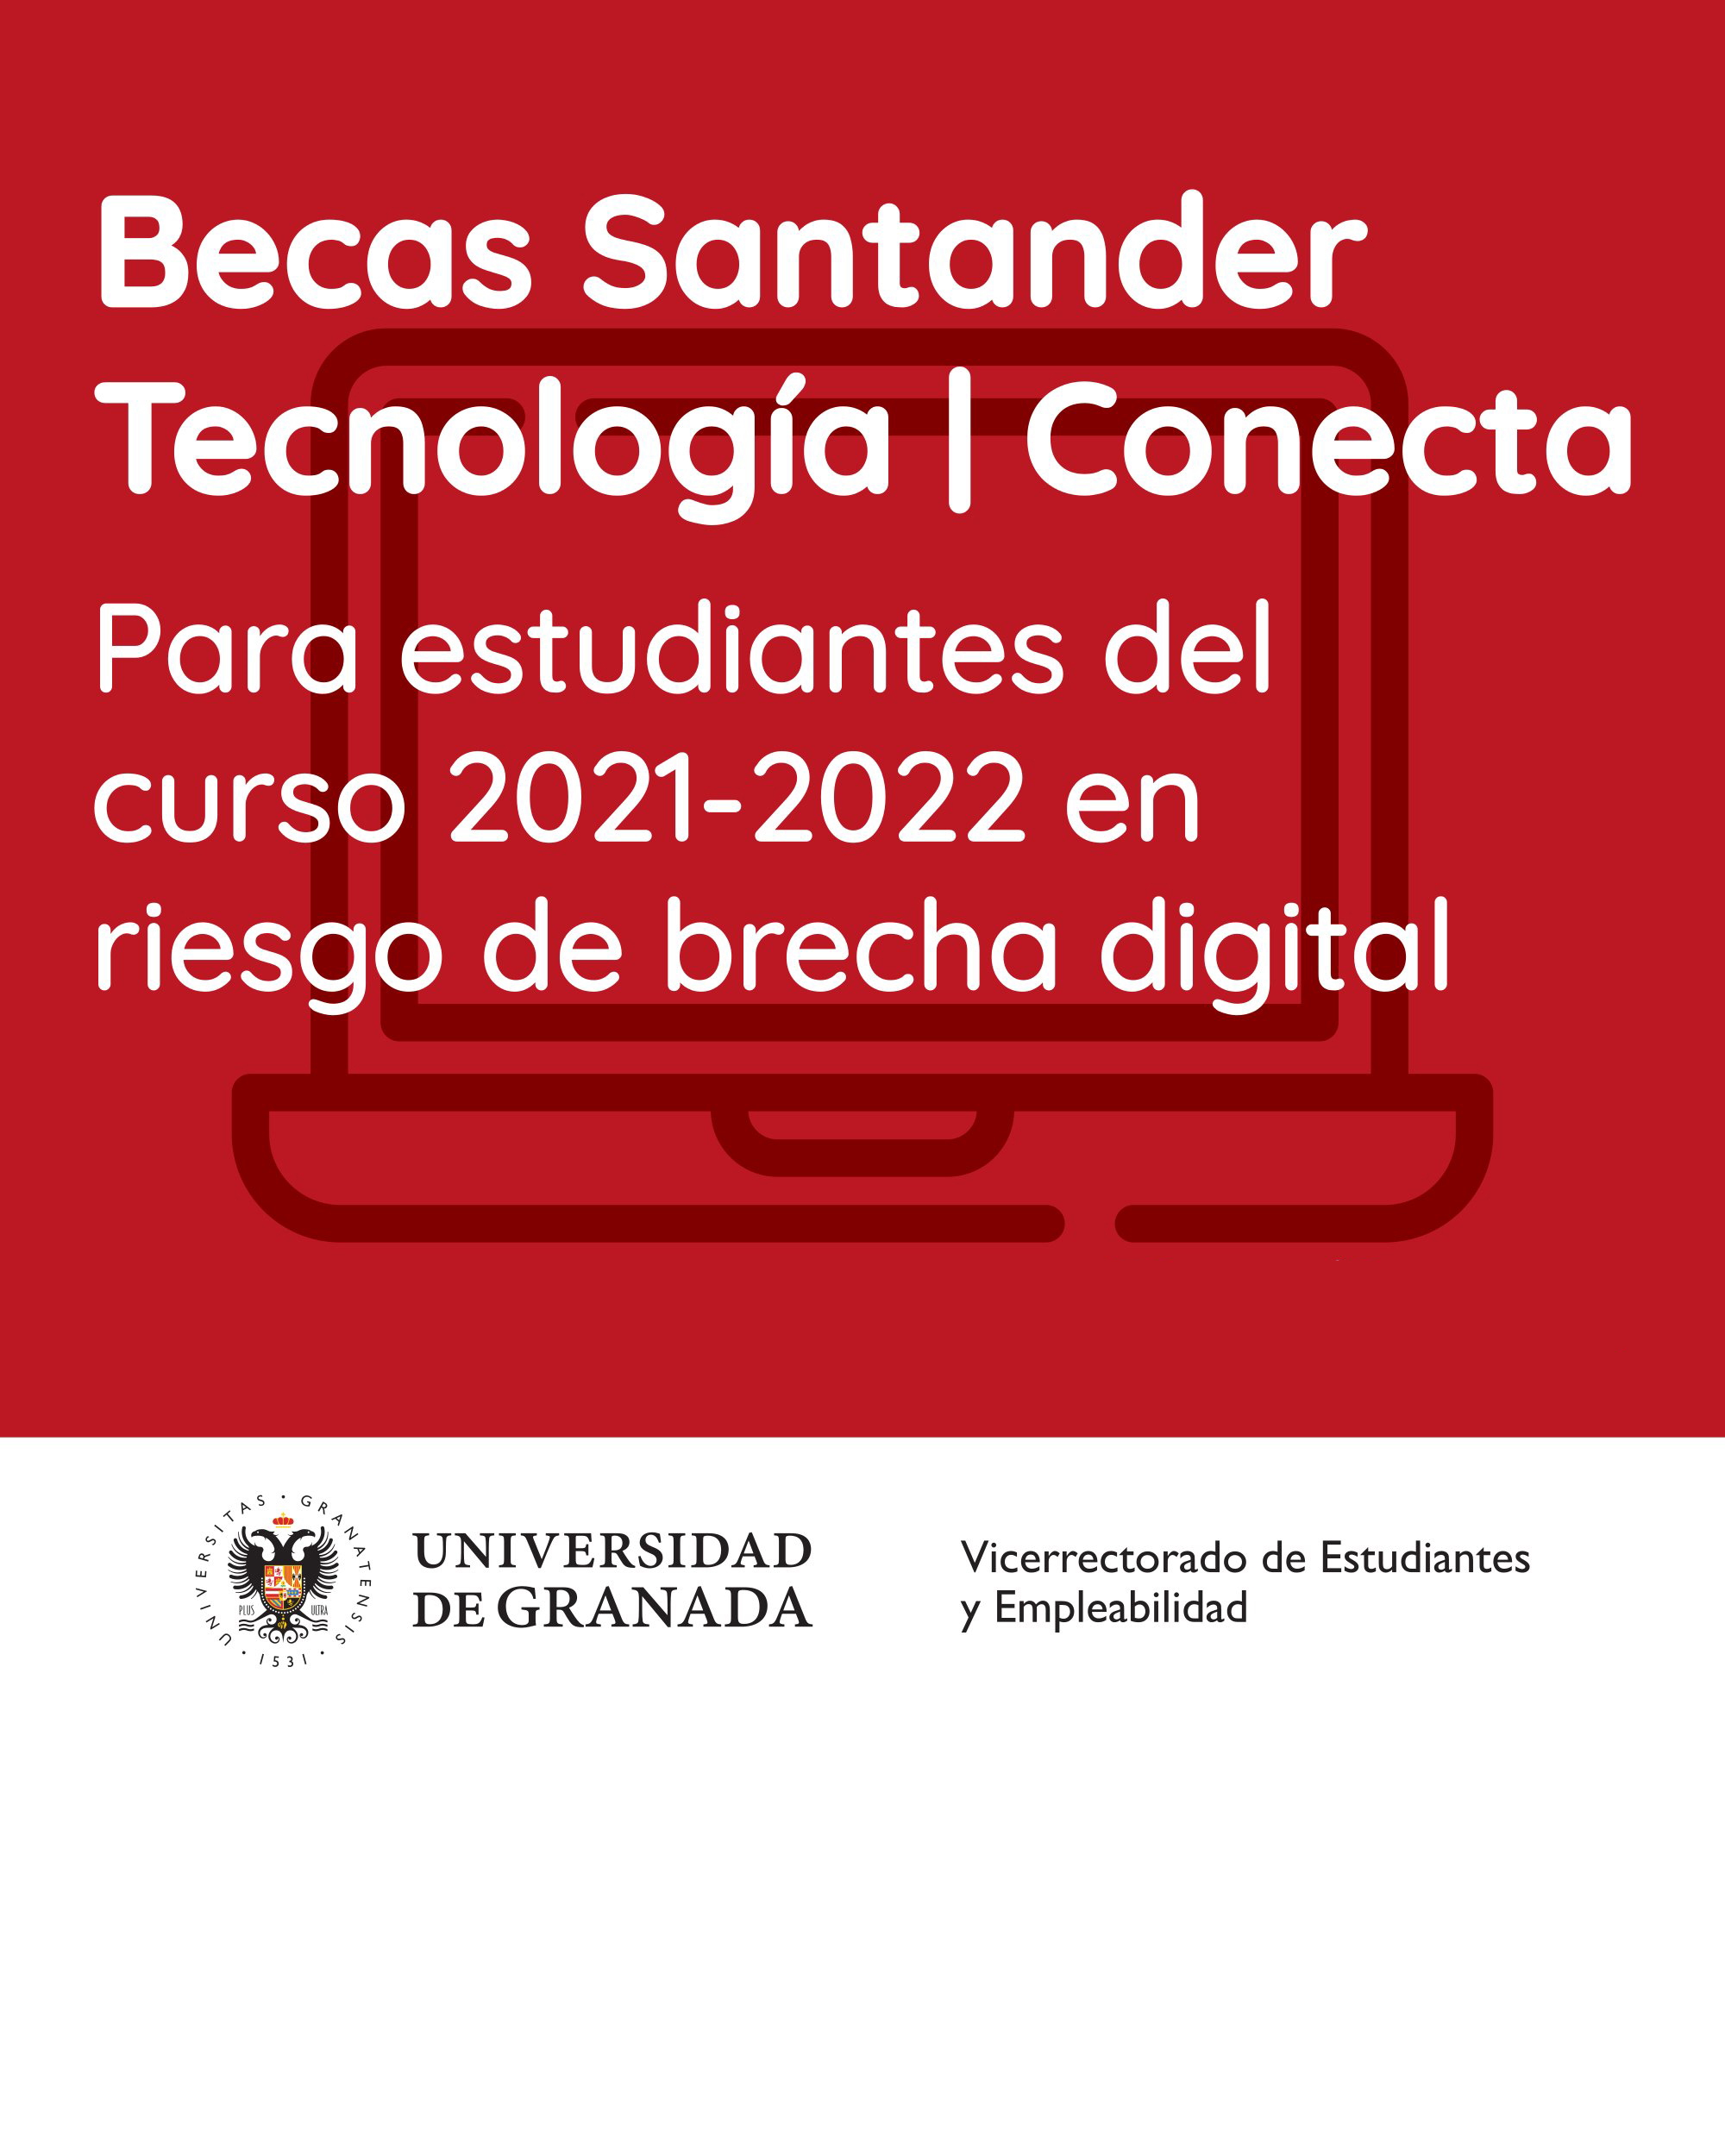 Becas para estudiantes del curso 2021-2022 en riesgo de brecha digital